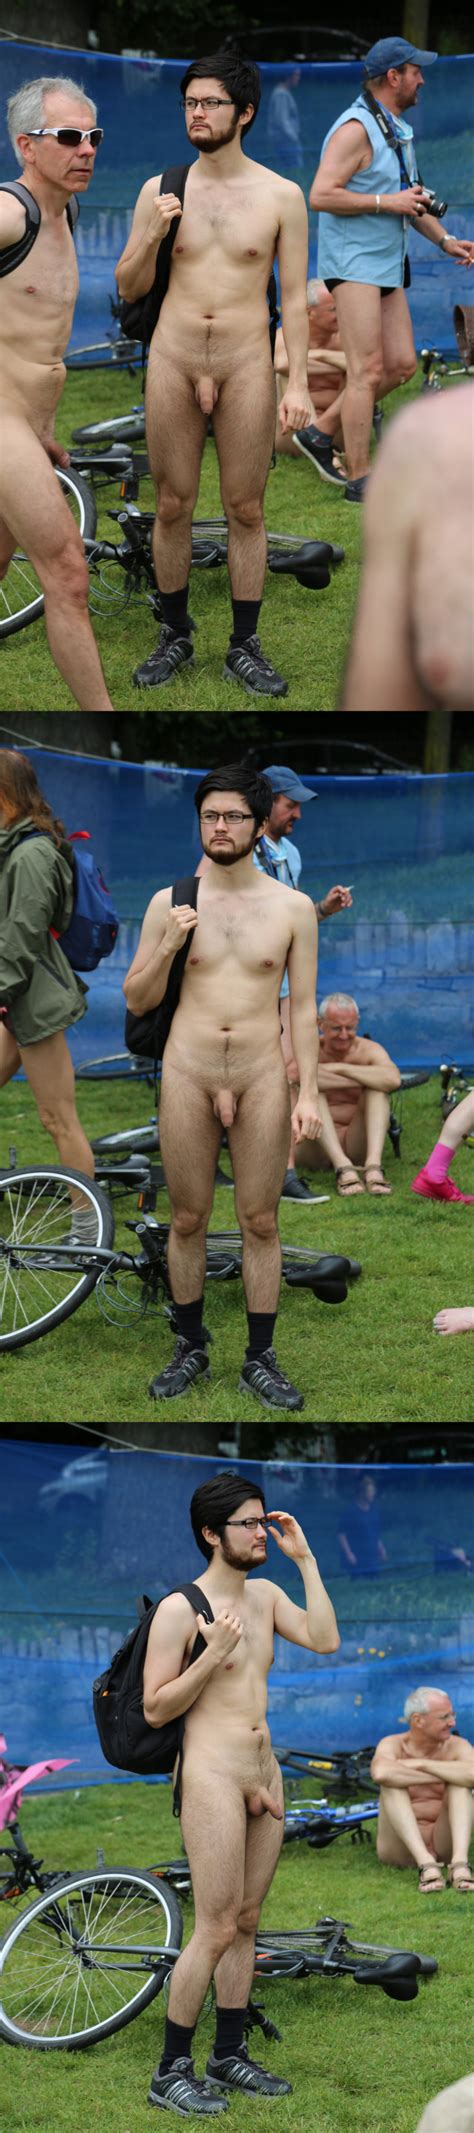 Nerd Guy Naked For The Wnbr Spycamfromguys Hidden Cams Spying On Men